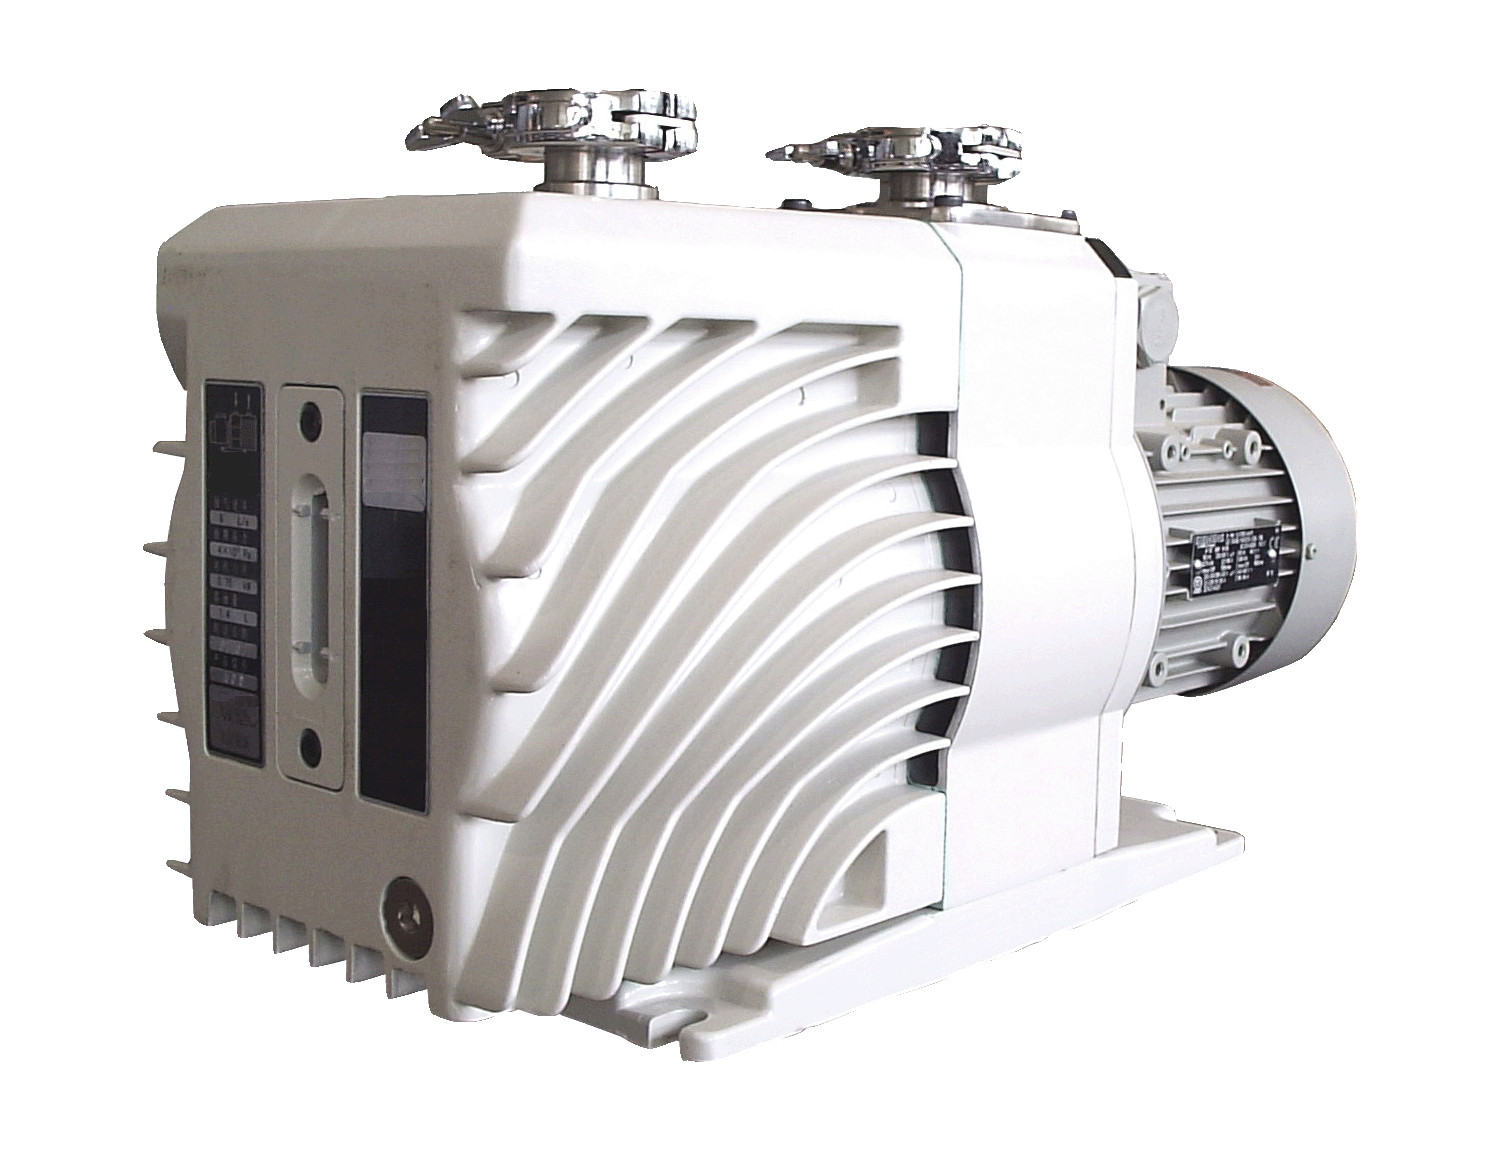 Picture of the EVD-36 vacuum pump